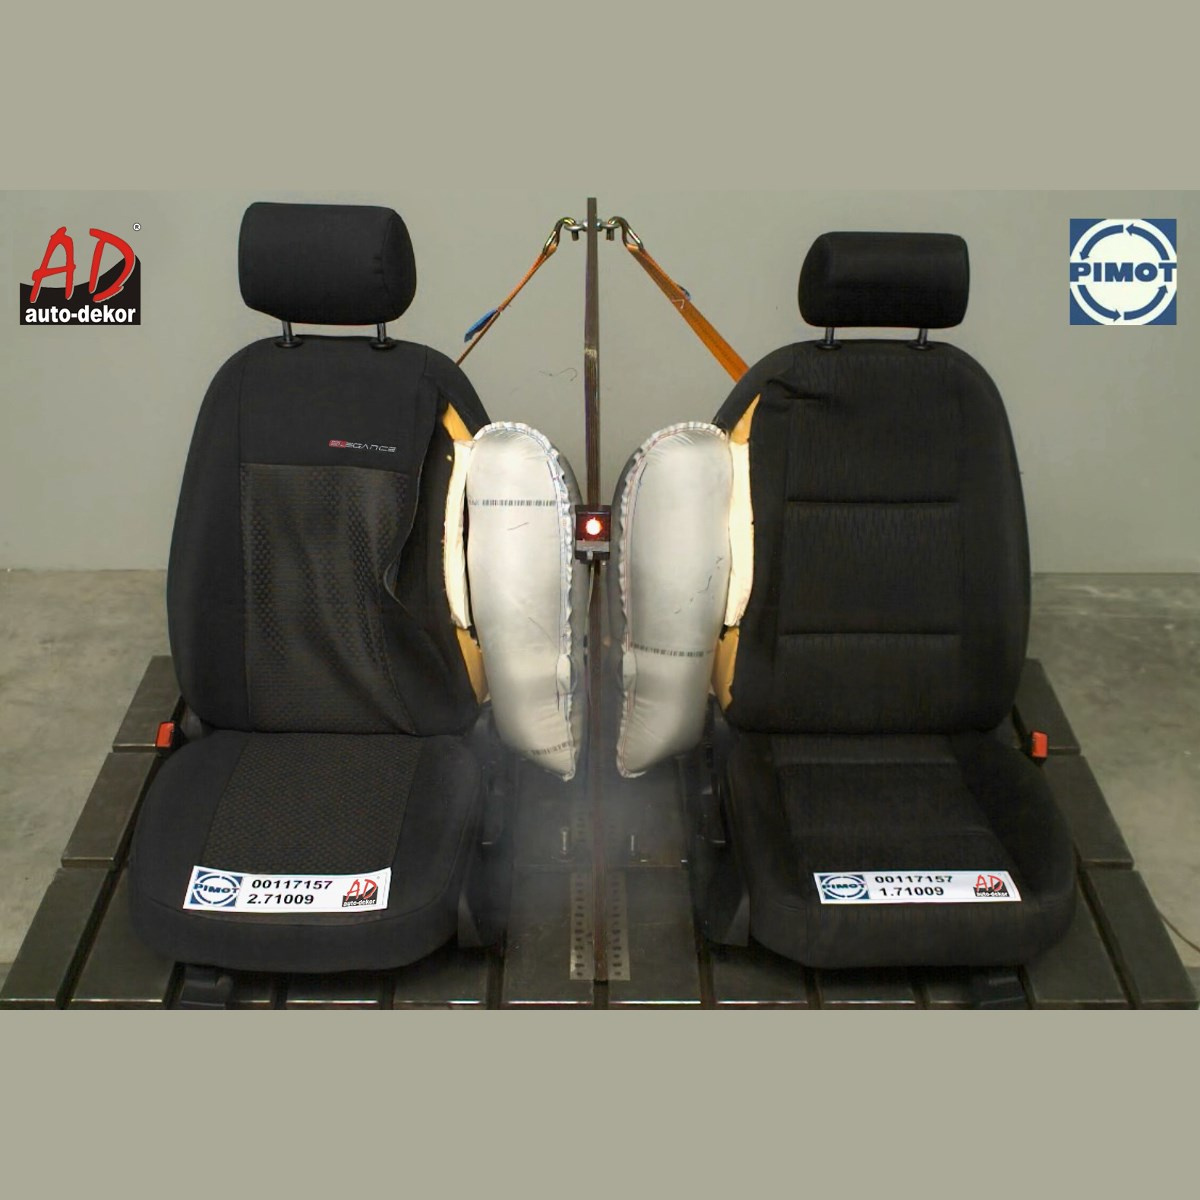 Maßgeschneiderte Sitzbezüge Auto für Ford Transit Connect Van (2013-2020) -  Autositzbezüge Schonbezüge für Autositze - 2+1 - E1 typ 1